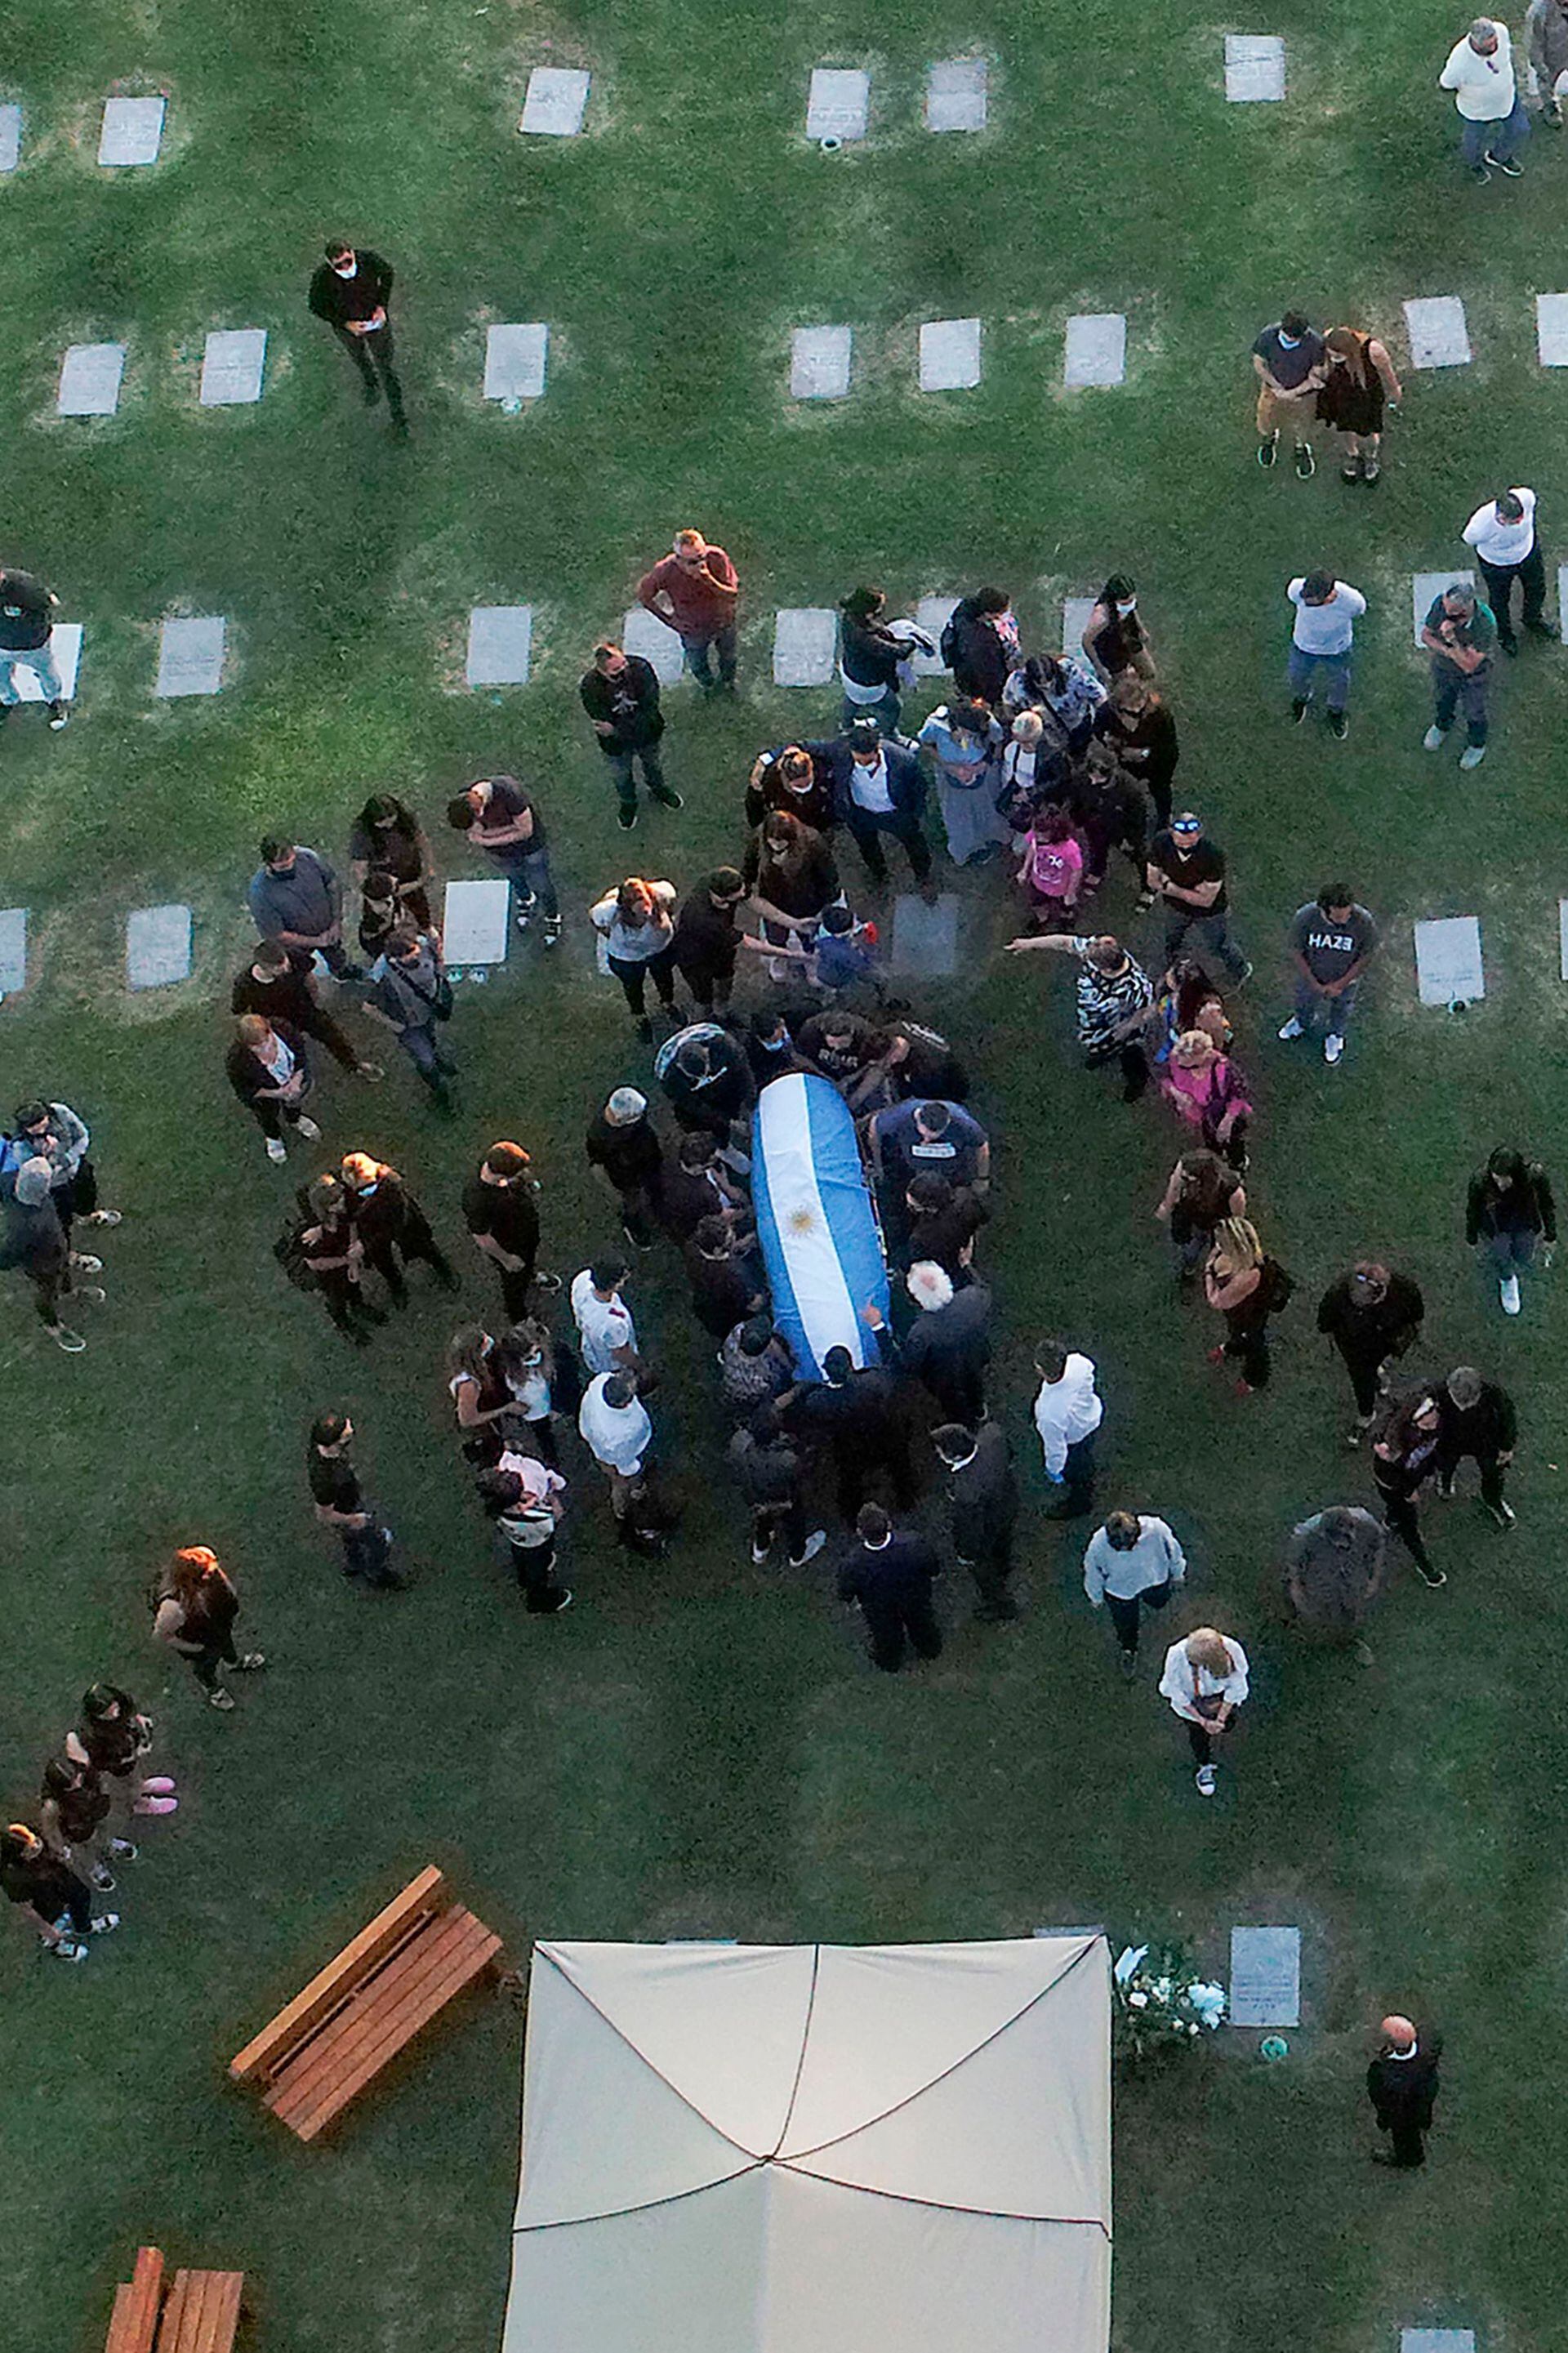 Familiares y amigos de Diego Maradona lo despiden en el cementerio de Bella Vista